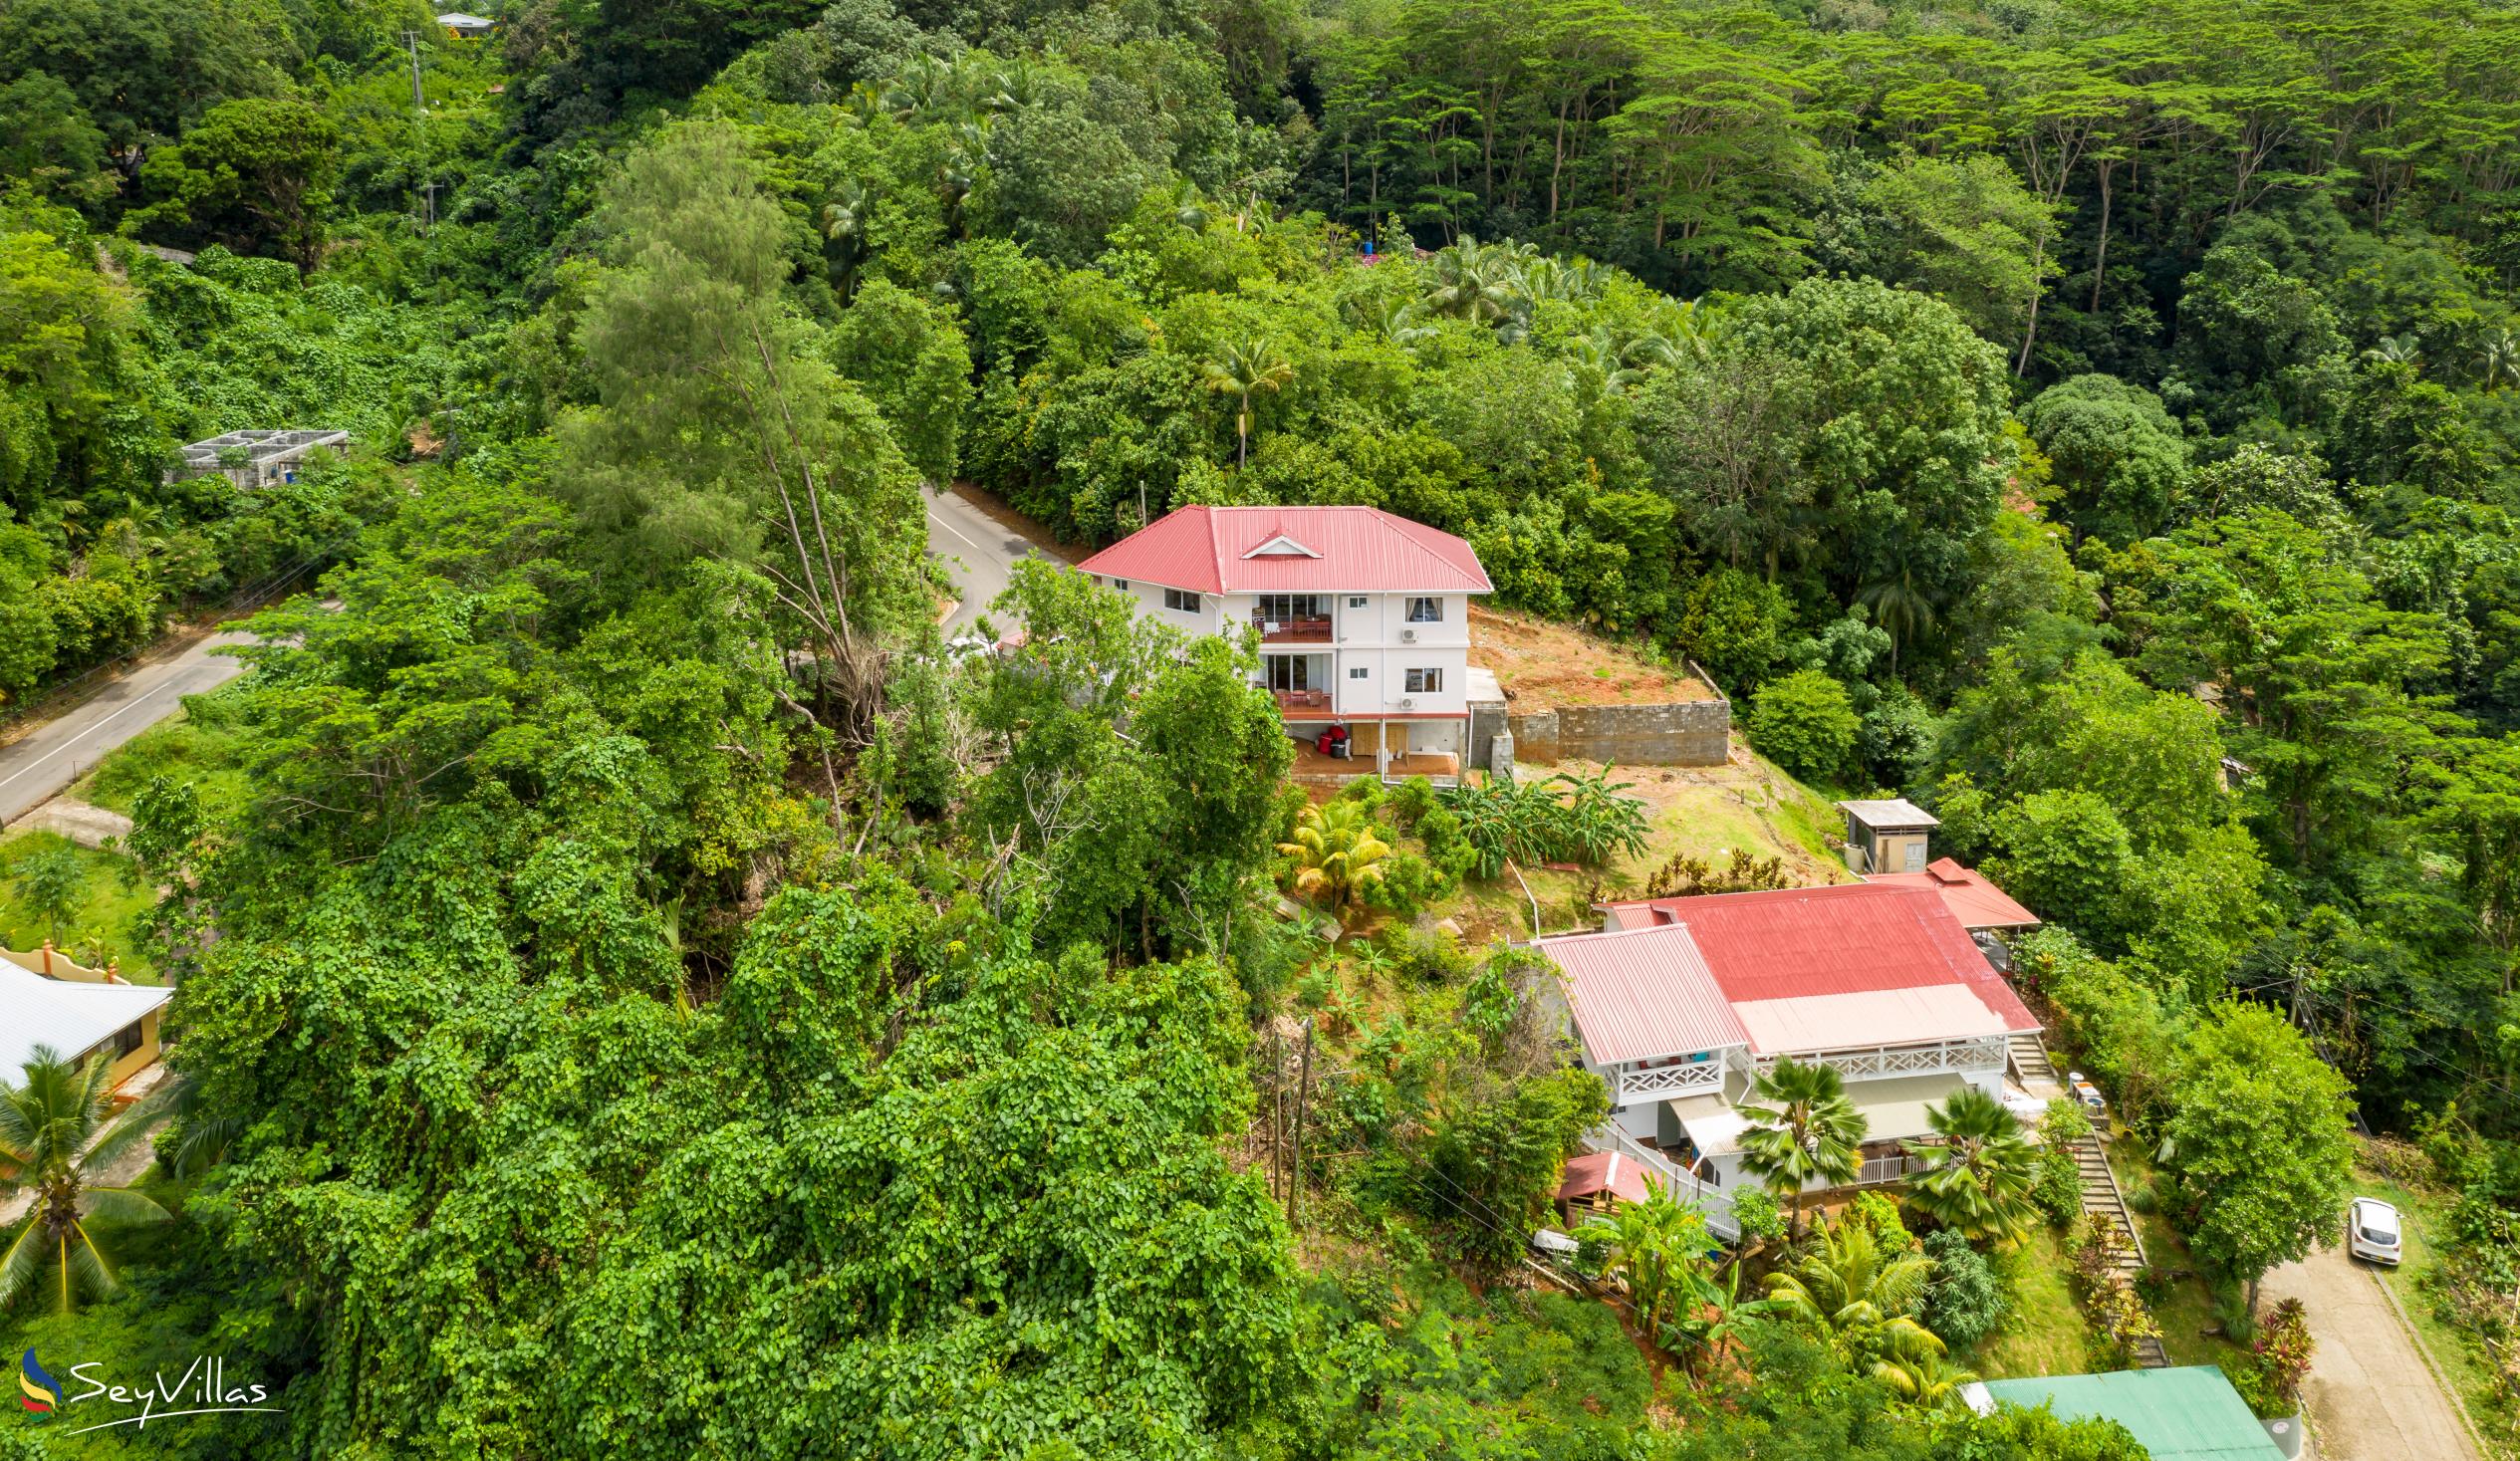 Foto 12: Cella Villa - Lage - Mahé (Seychellen)